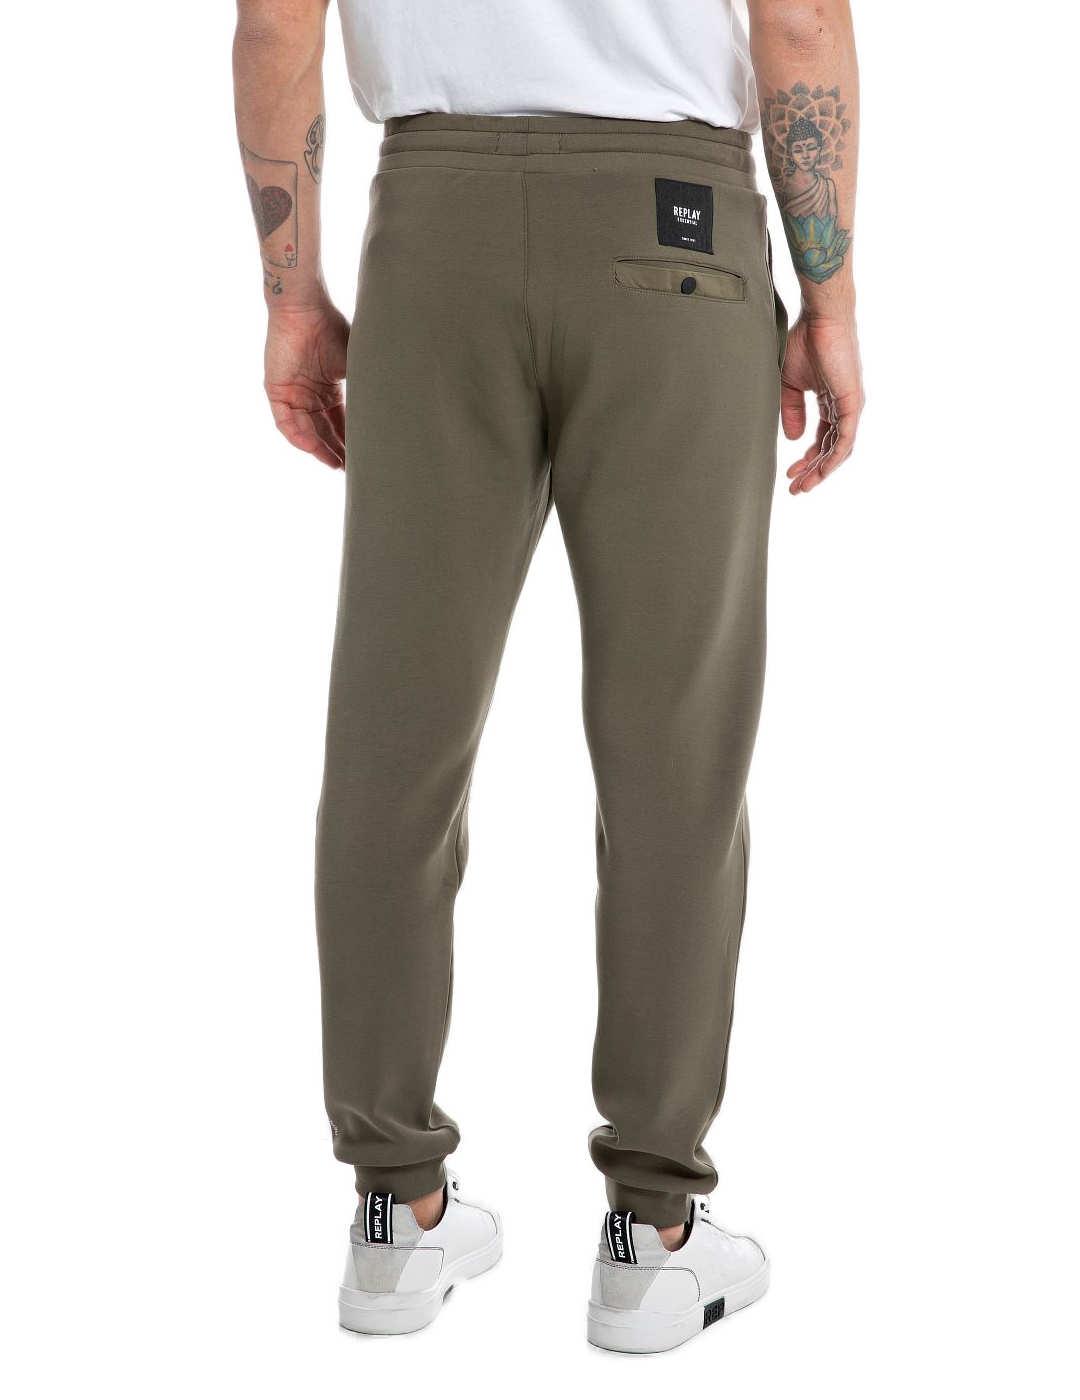 Pantalón Replay verde militar cintura elástica para hombre